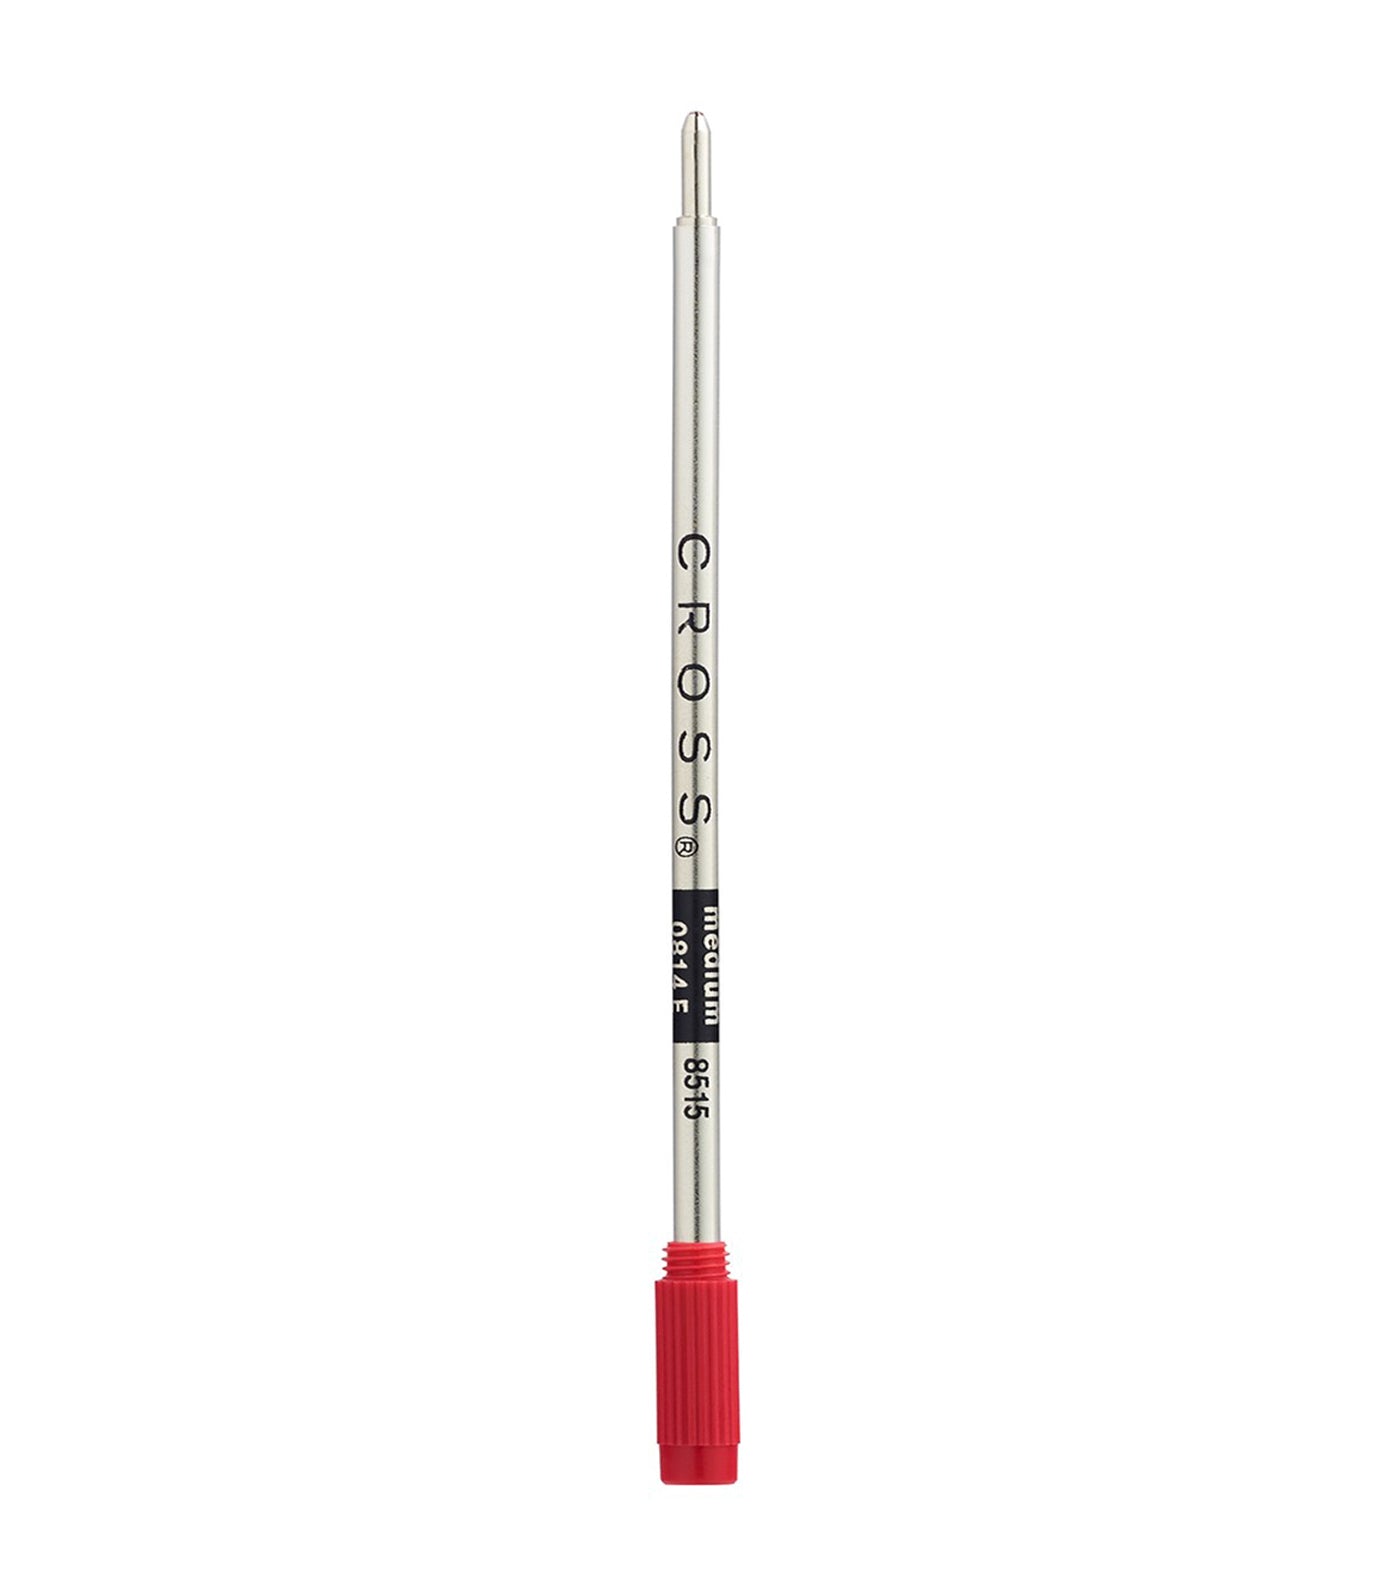 Red Medium Ballpoint Pen Refill